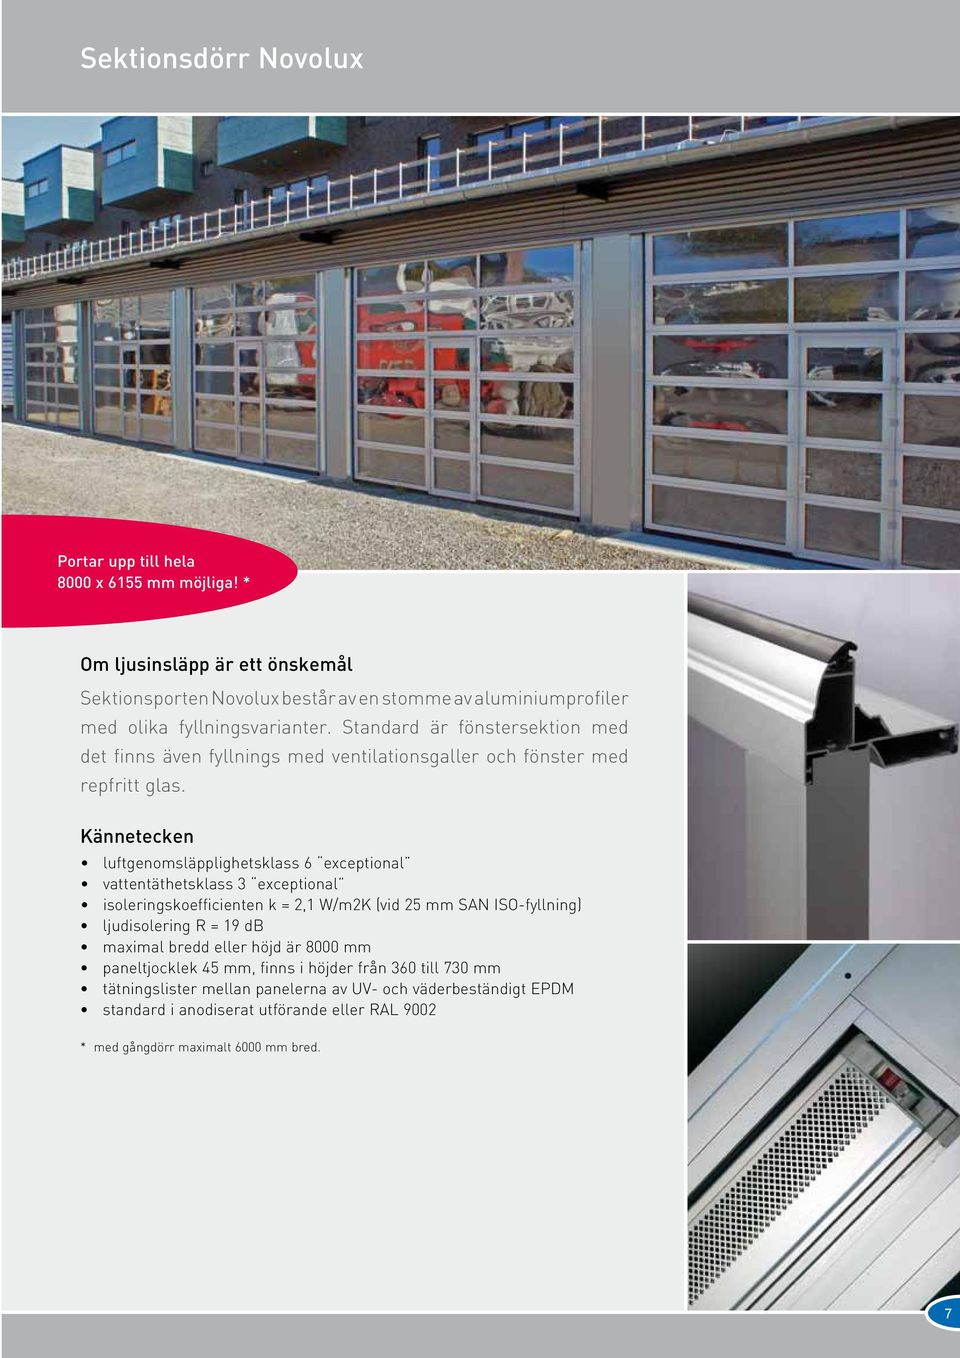 Standard är fönstersektion med det finns även fyllnings med ventilationsgaller och fönster med repfritt glas.